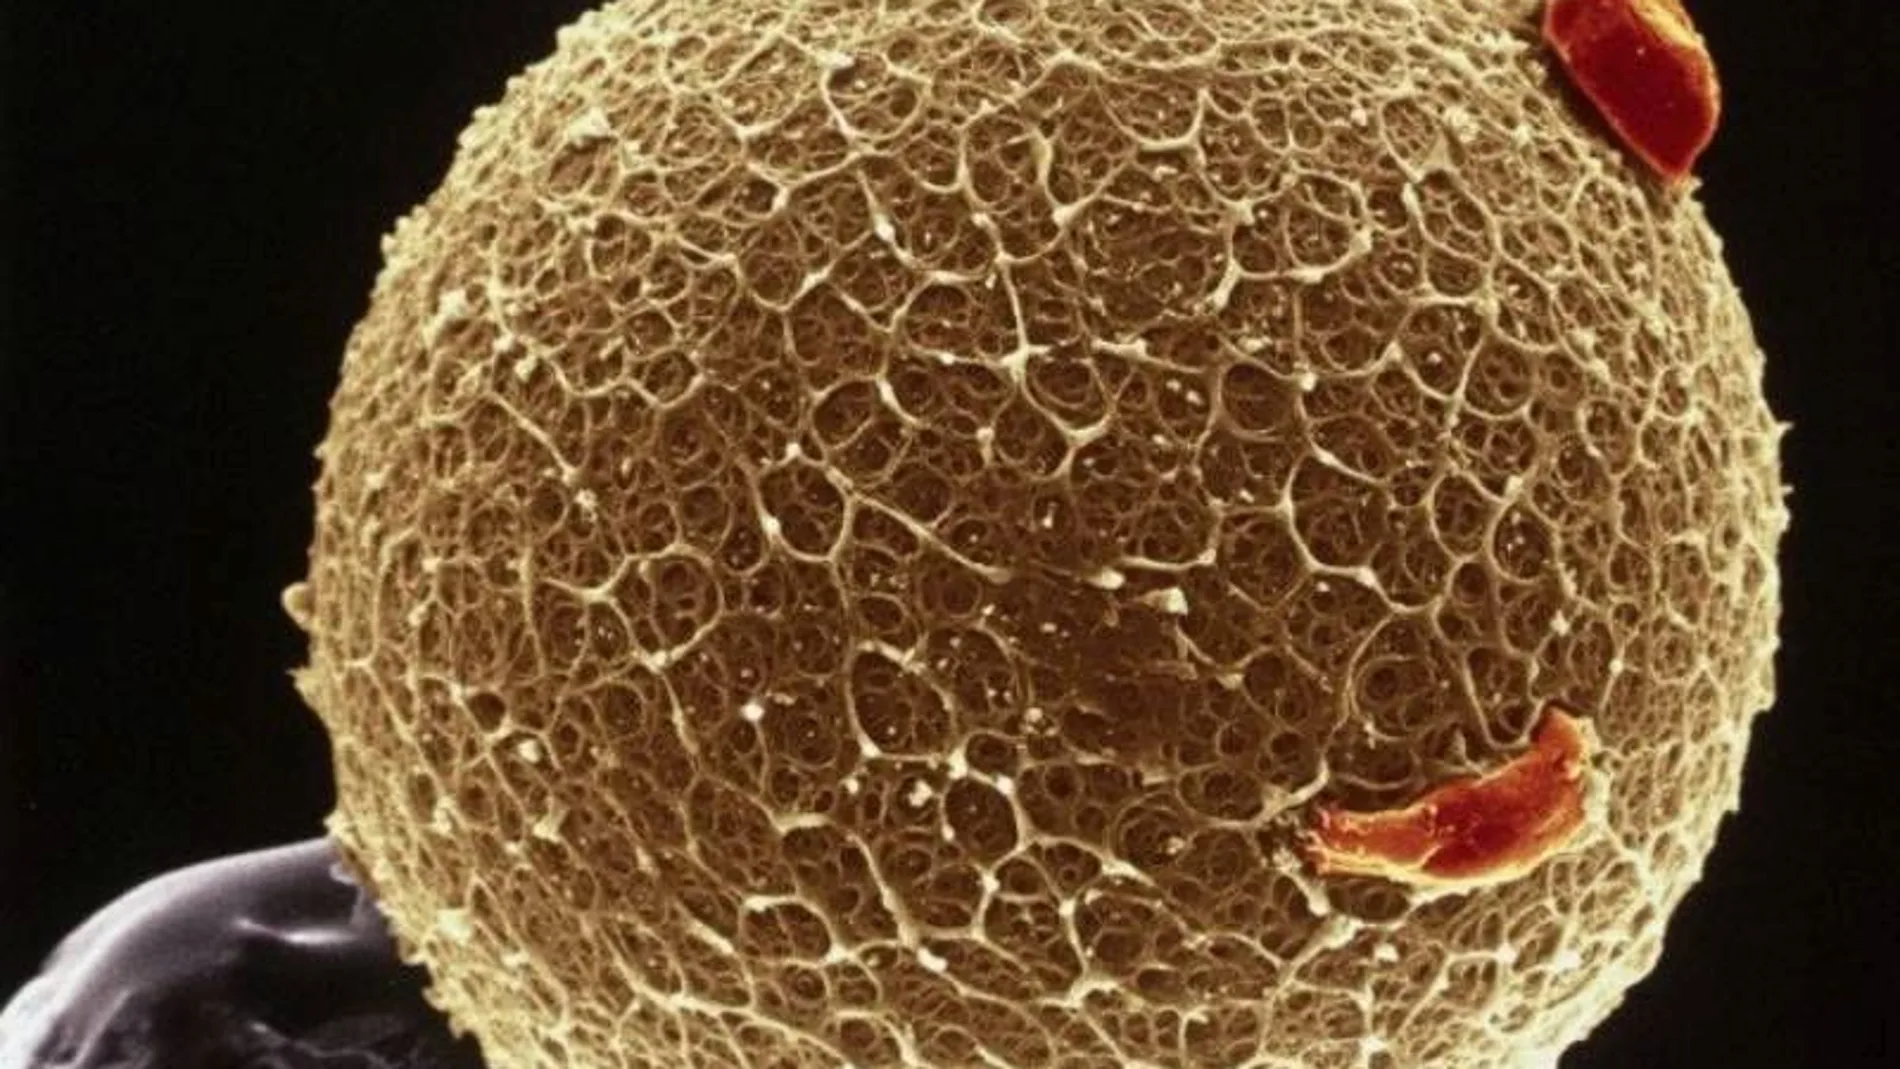 Imagen de un óvulo tomada con micrografía electrónica de barrido